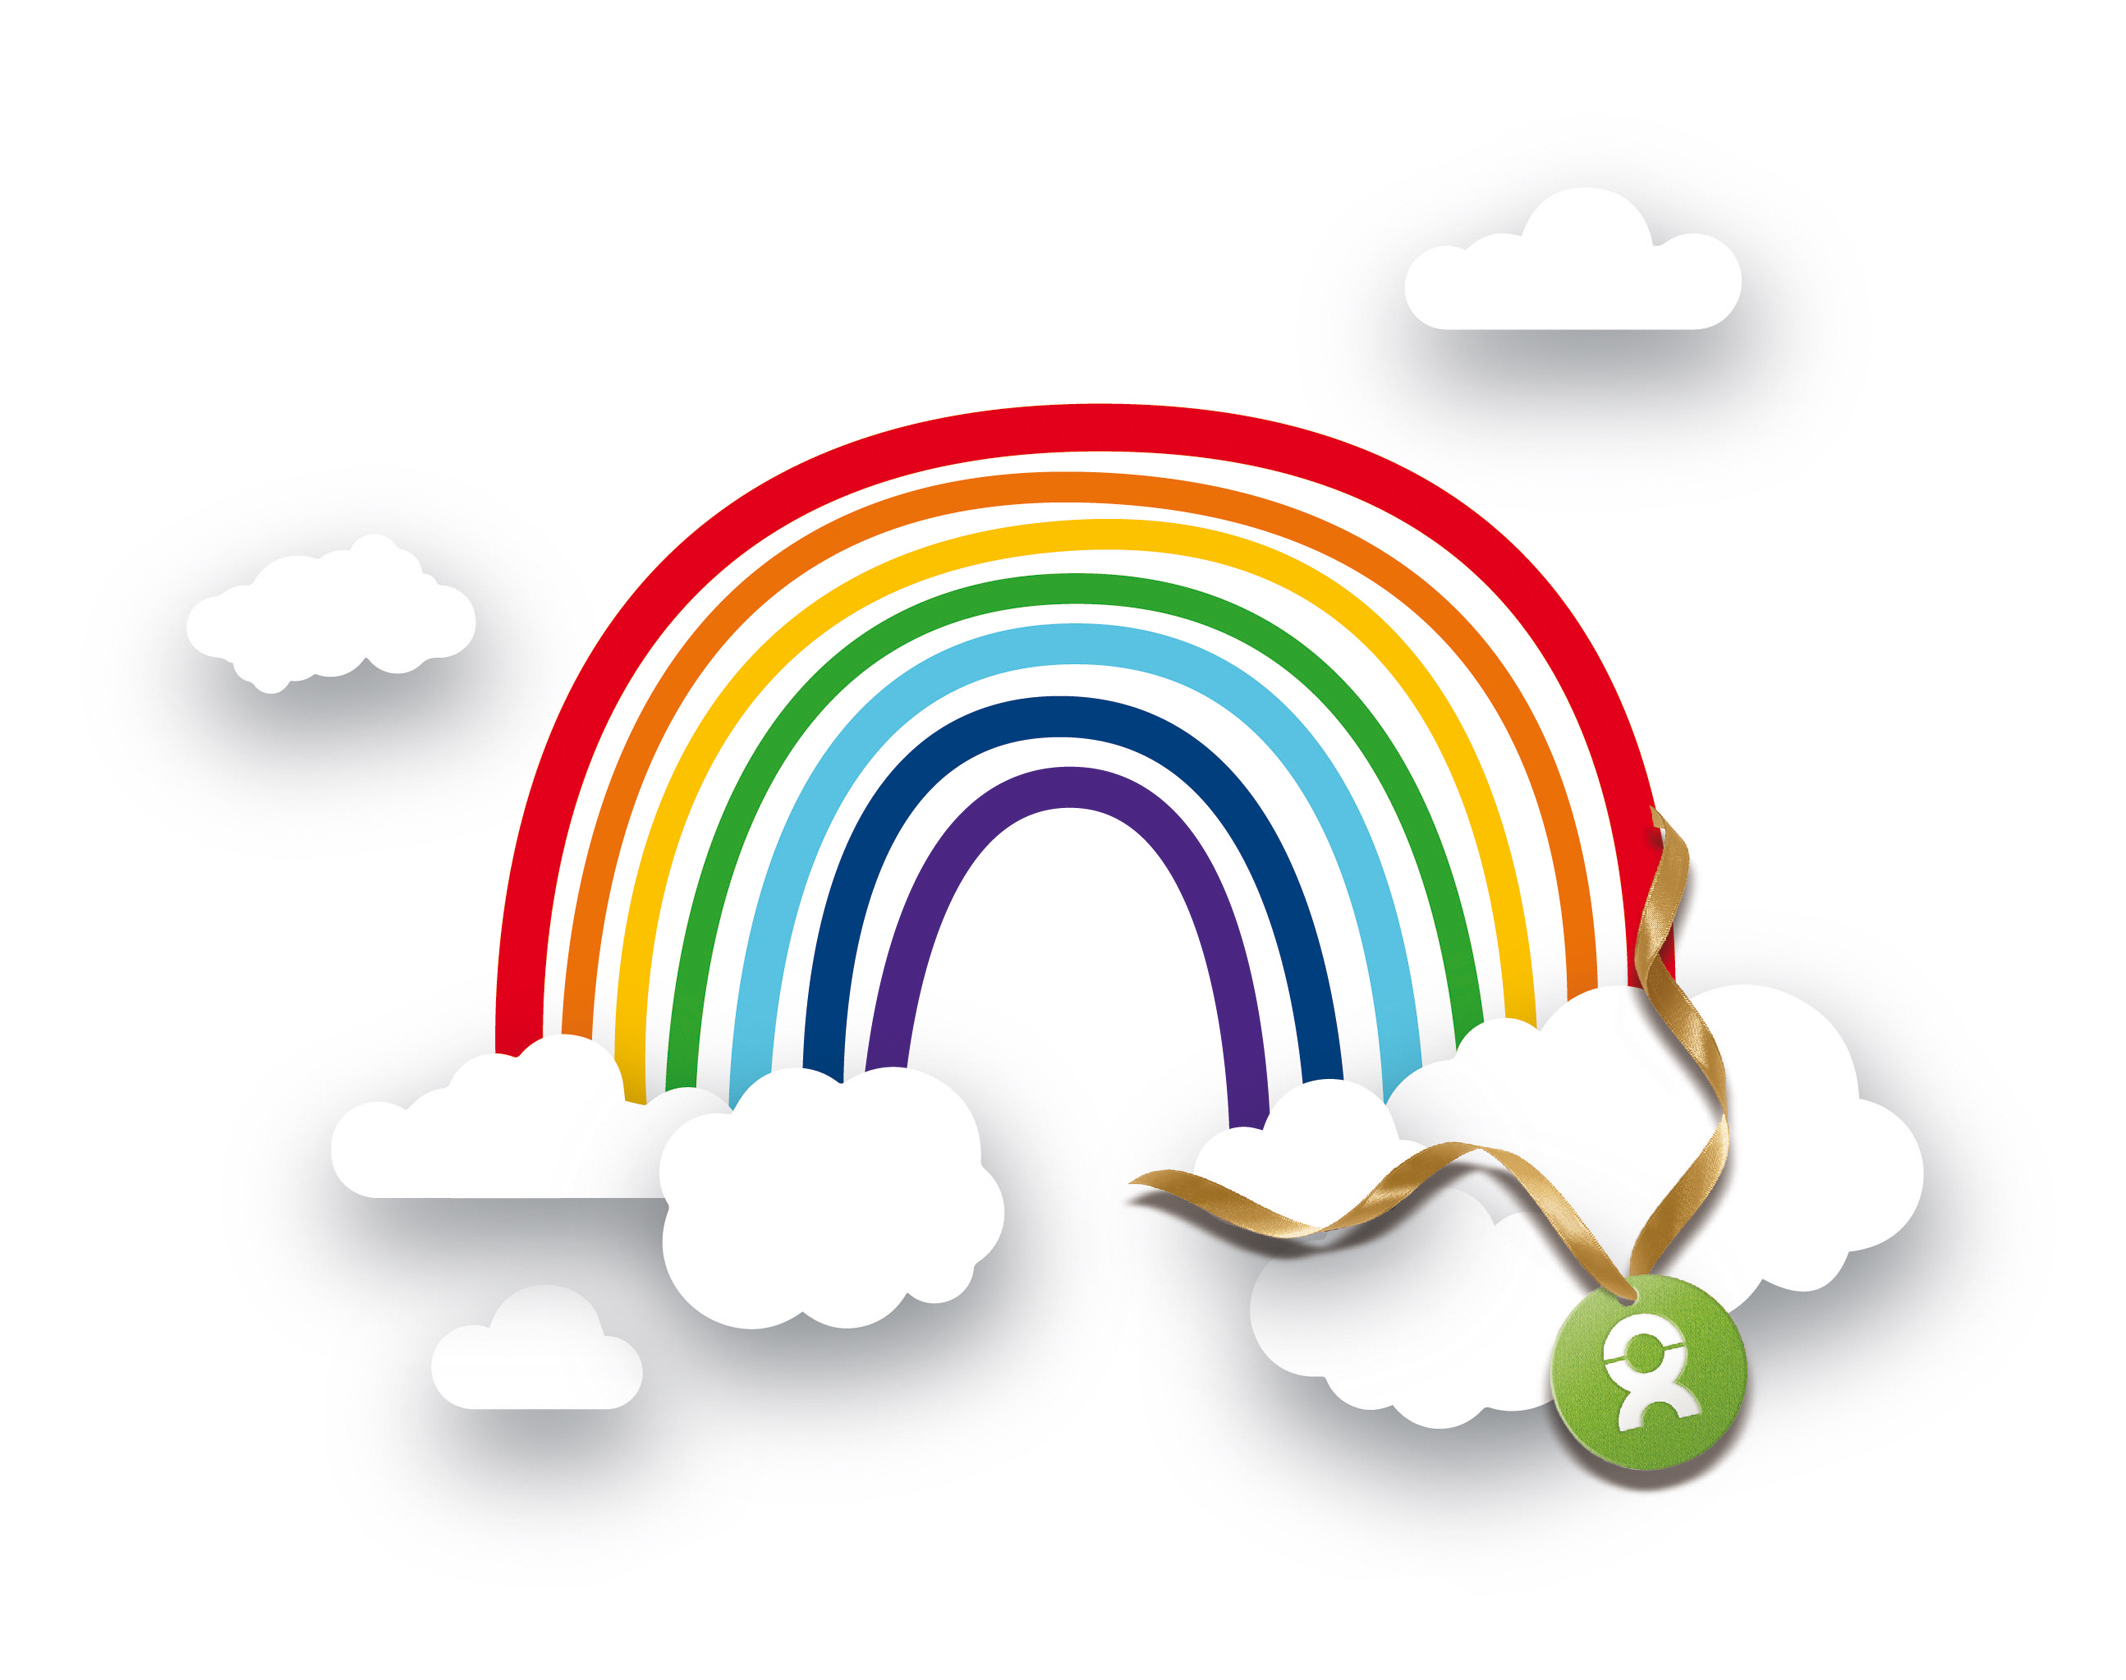 Beispiel digitales Geschenk Spende: Grafik eines Regenbogens mit weißen Wölkchen und einem Oxfam-Logo